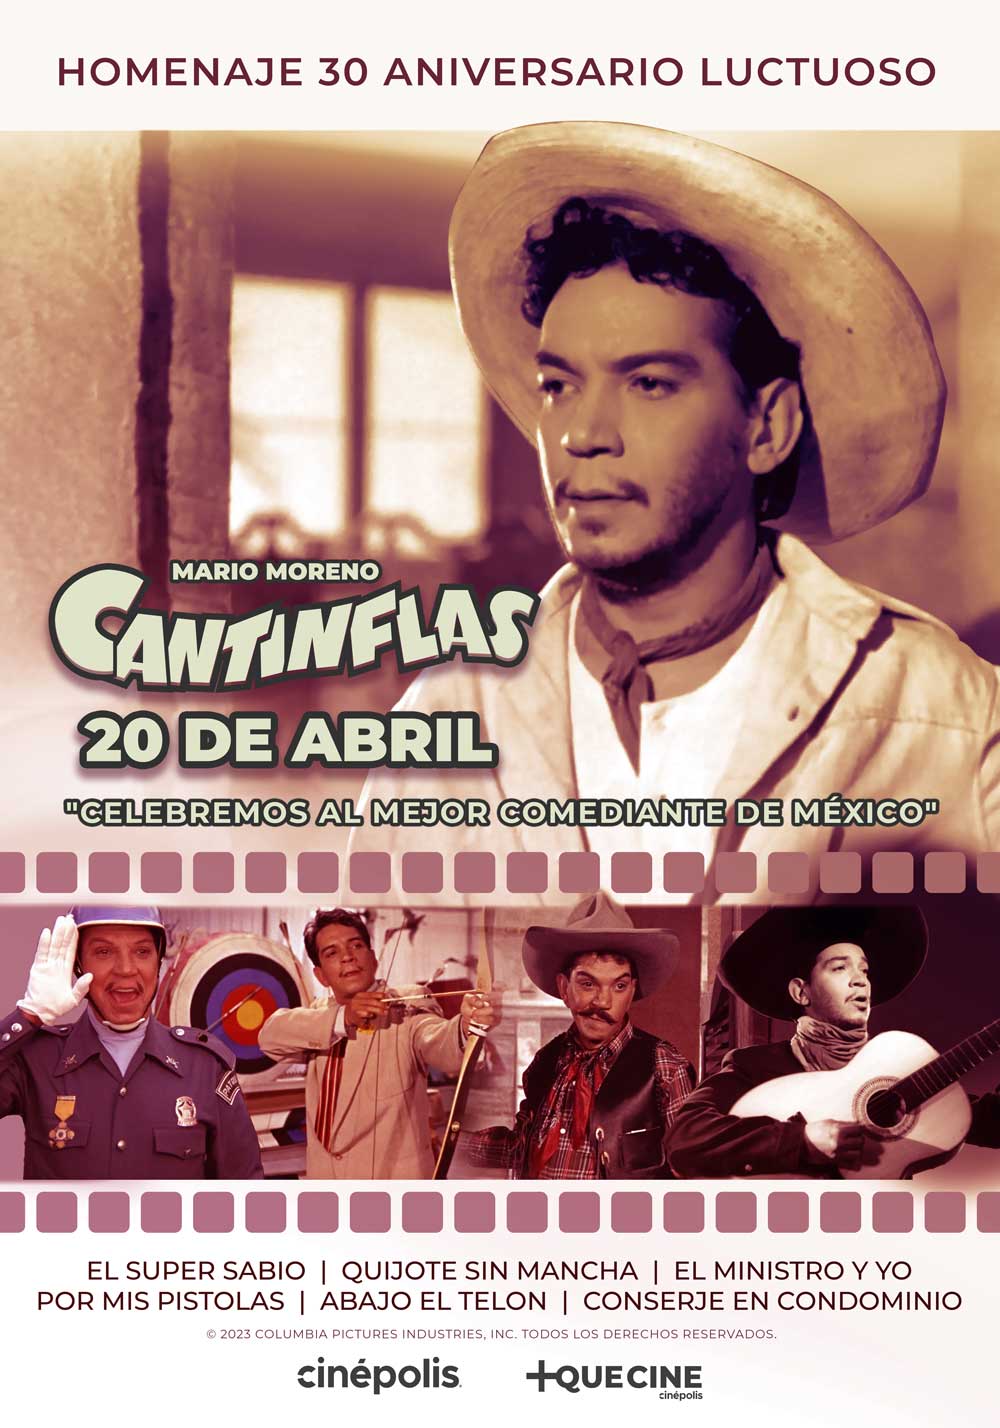 Cinépolis brinda un Homenaje a Mario Moreno "Cantinflas" 23